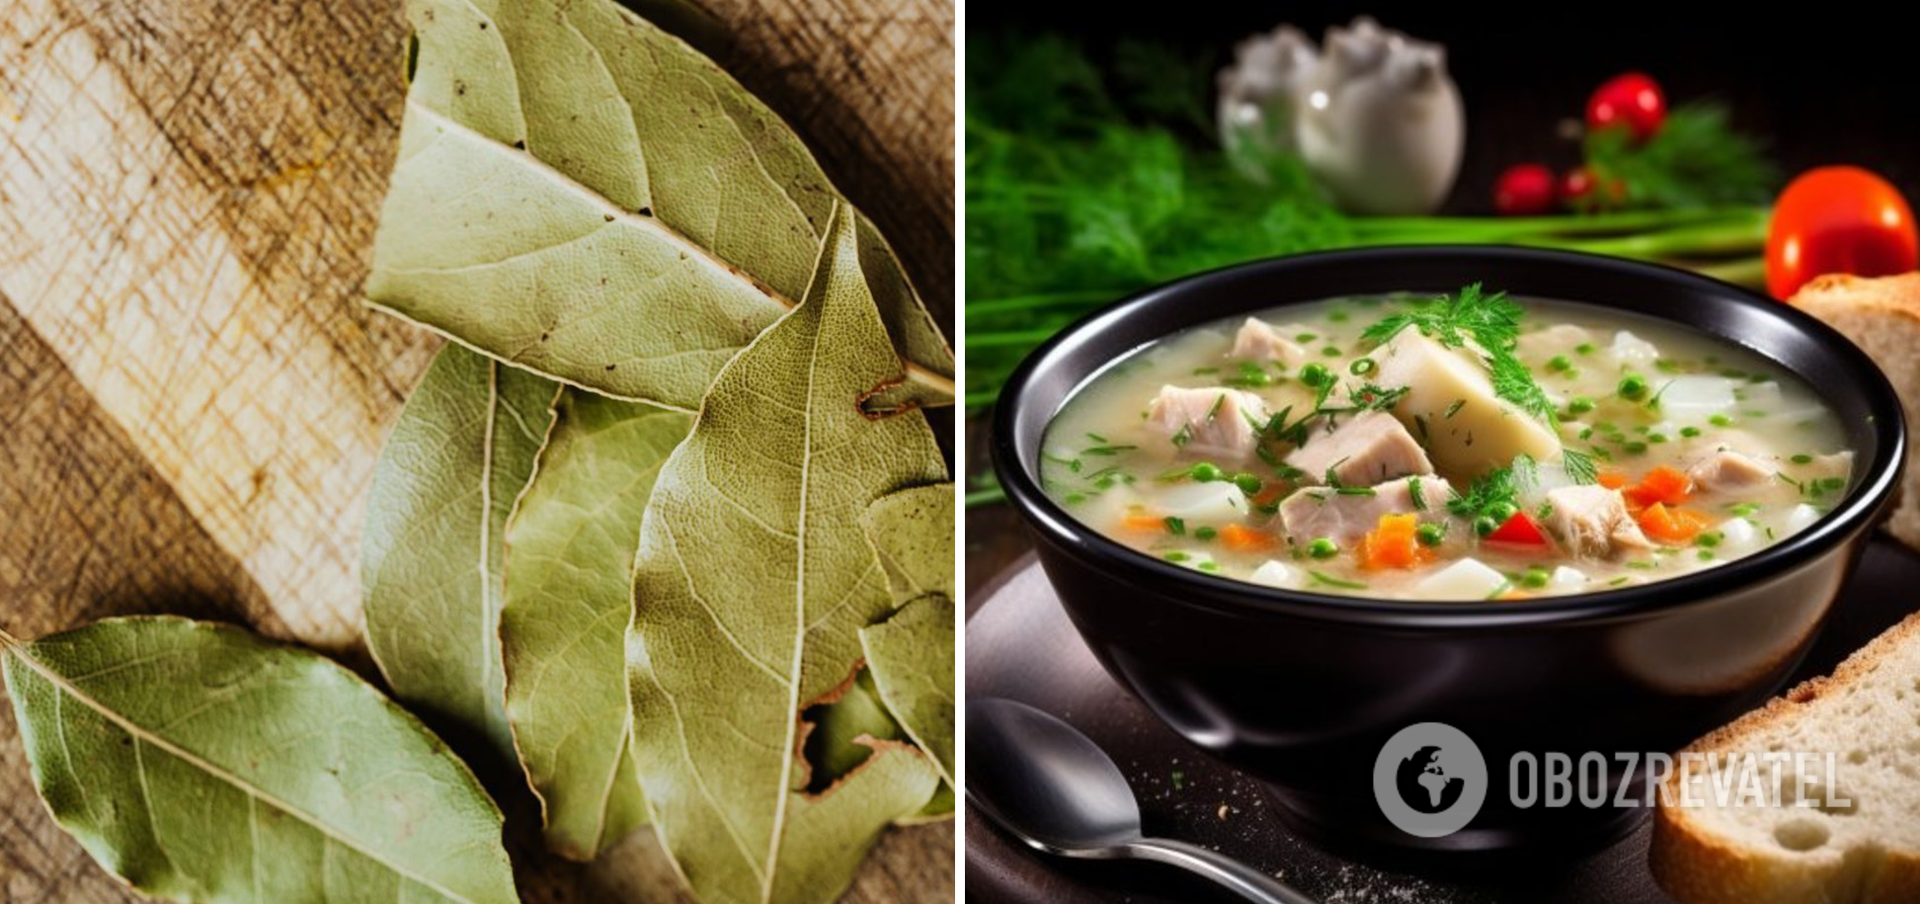 Почему лавровые листья могут испортить суп и борщ